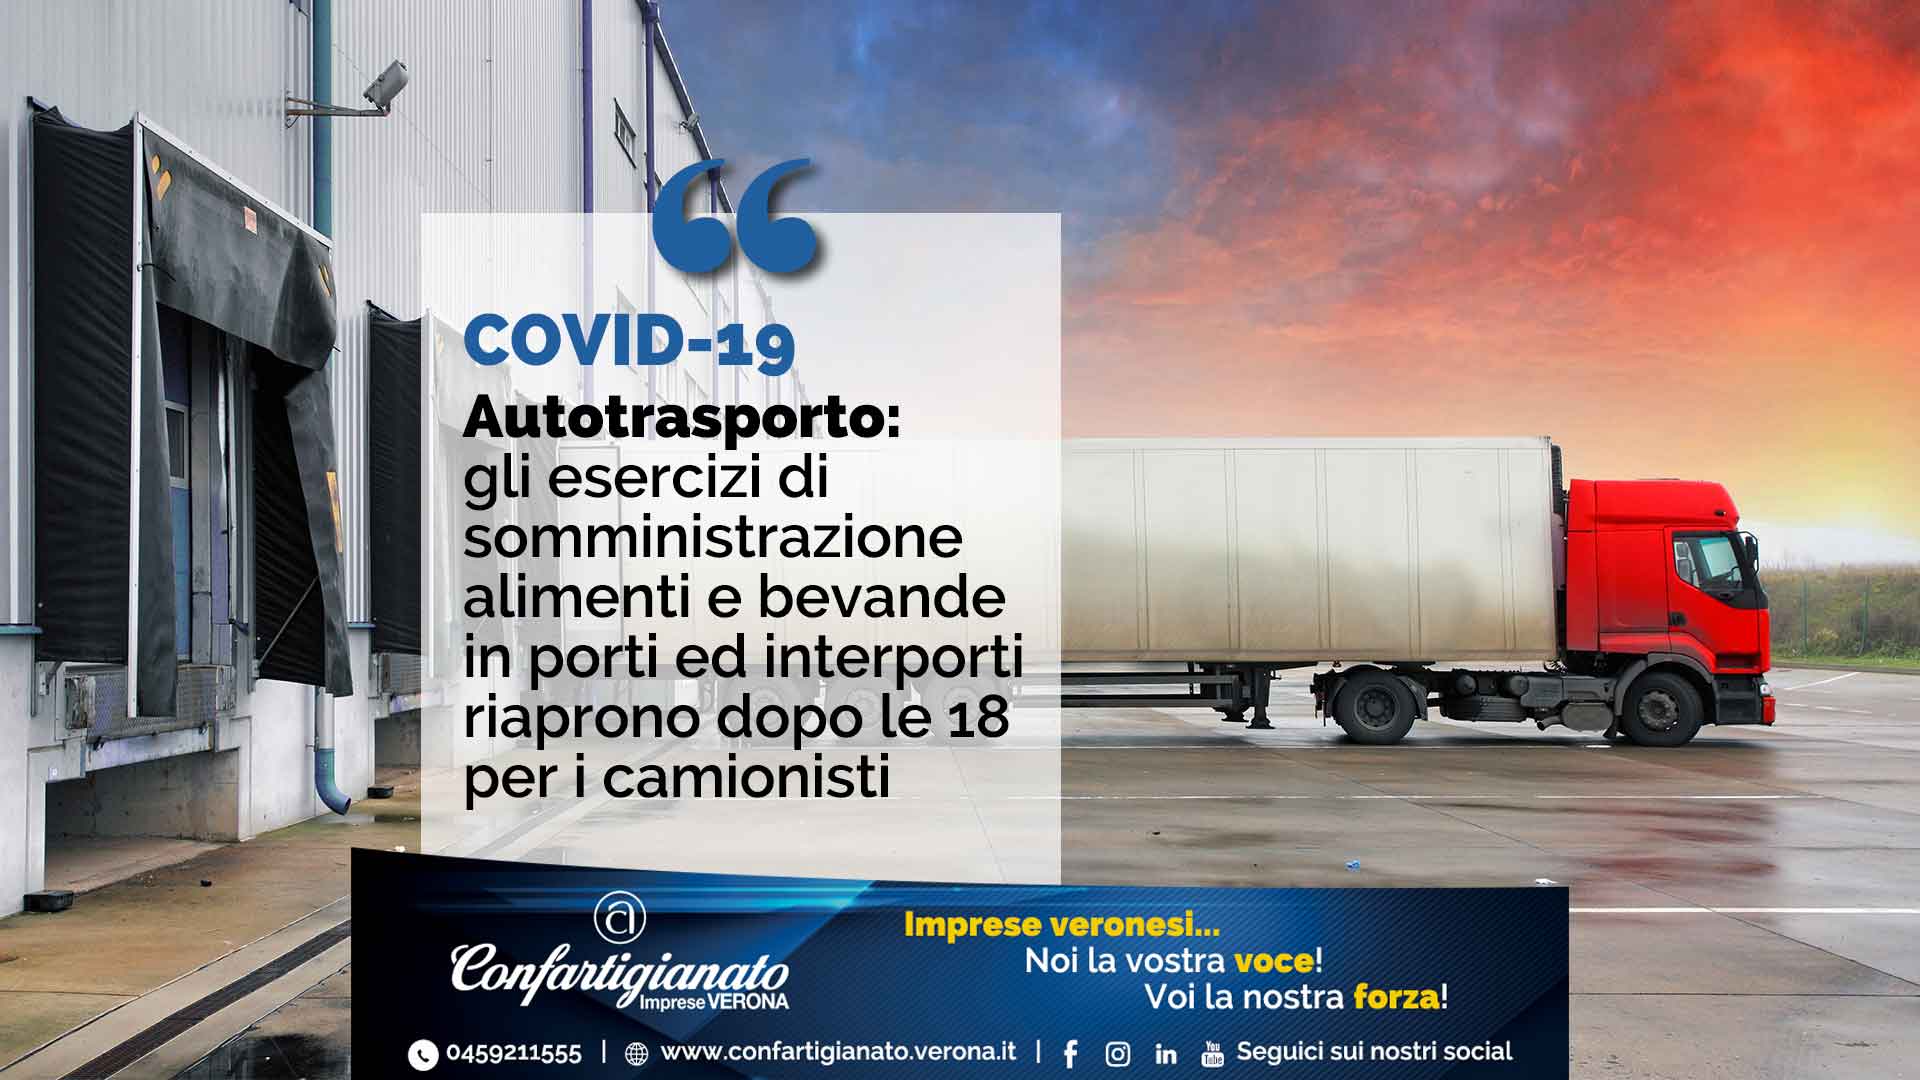 COVID-19 – Autotrasporto: esercizi somministrazione alimenti e bevande in porti ed interporti riaprono dopo le 18 per i camionisti